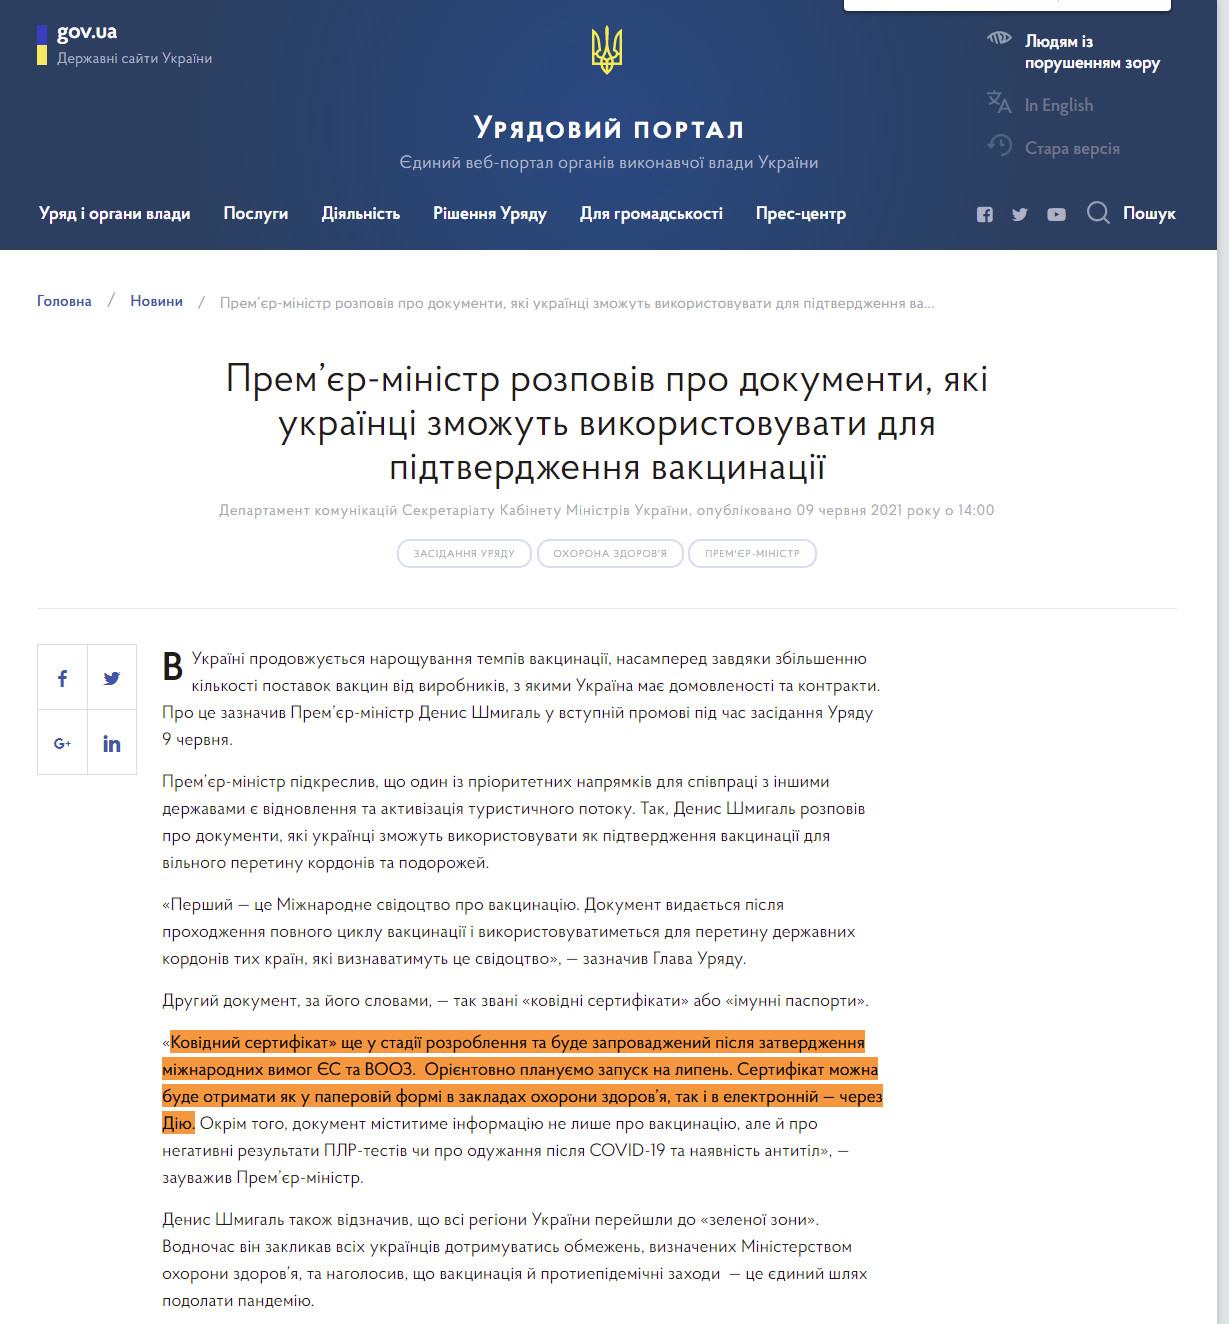 https://www.kmu.gov.ua/news/premyer-ministr-rozpoviv-pro-dokumenti-yaki-ukrayinci-zmozhut-vikoristovuvati-dlya-pidtverdzhennya-vakcinaciyi